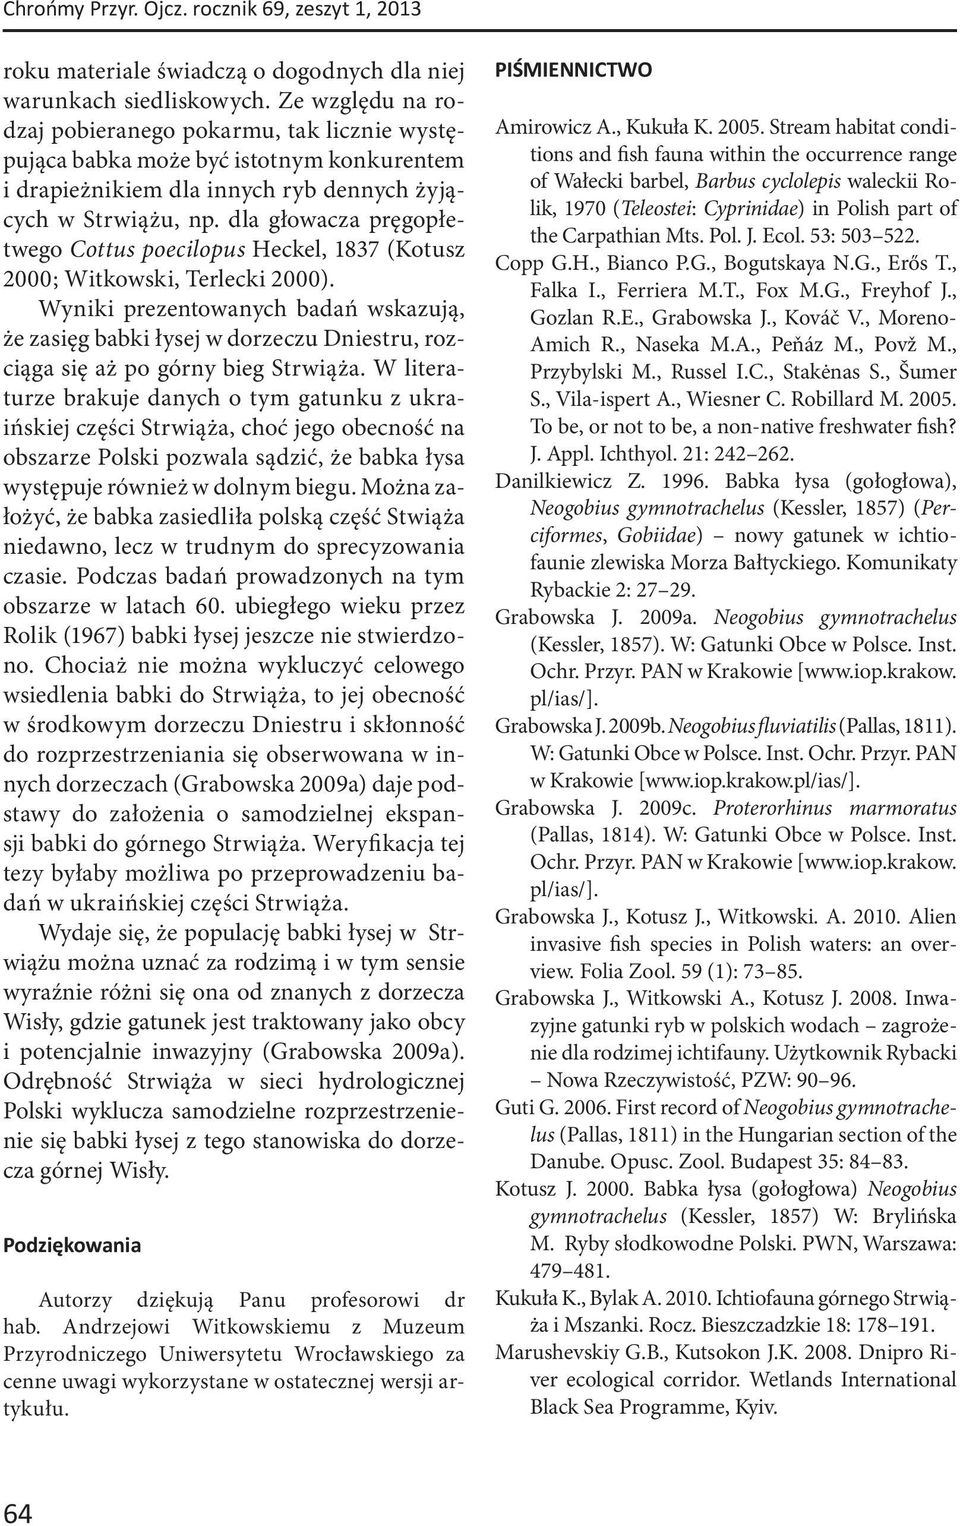 dla głowacza pręgopłetwego Cottus poecilopus Heckel, 1837 (Kotusz 2000; Witkowski, Terlecki 2000).